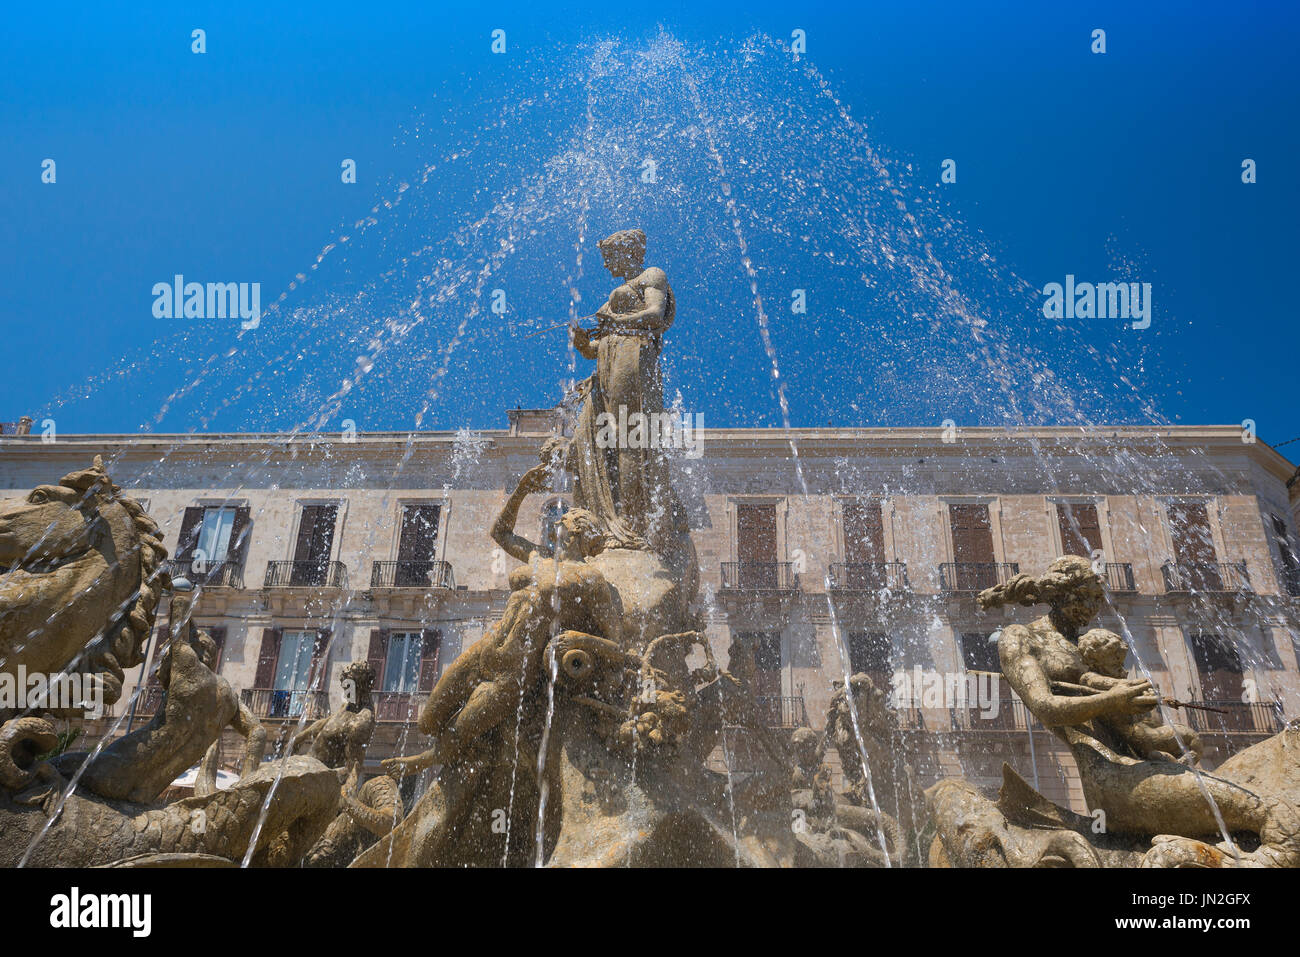 Siracusa Fontana di Sicilia, la famosa Fontana di Artemide nella storica Piazza Archimede di Ortigia, Siracusa, Sicilia. Foto Stock